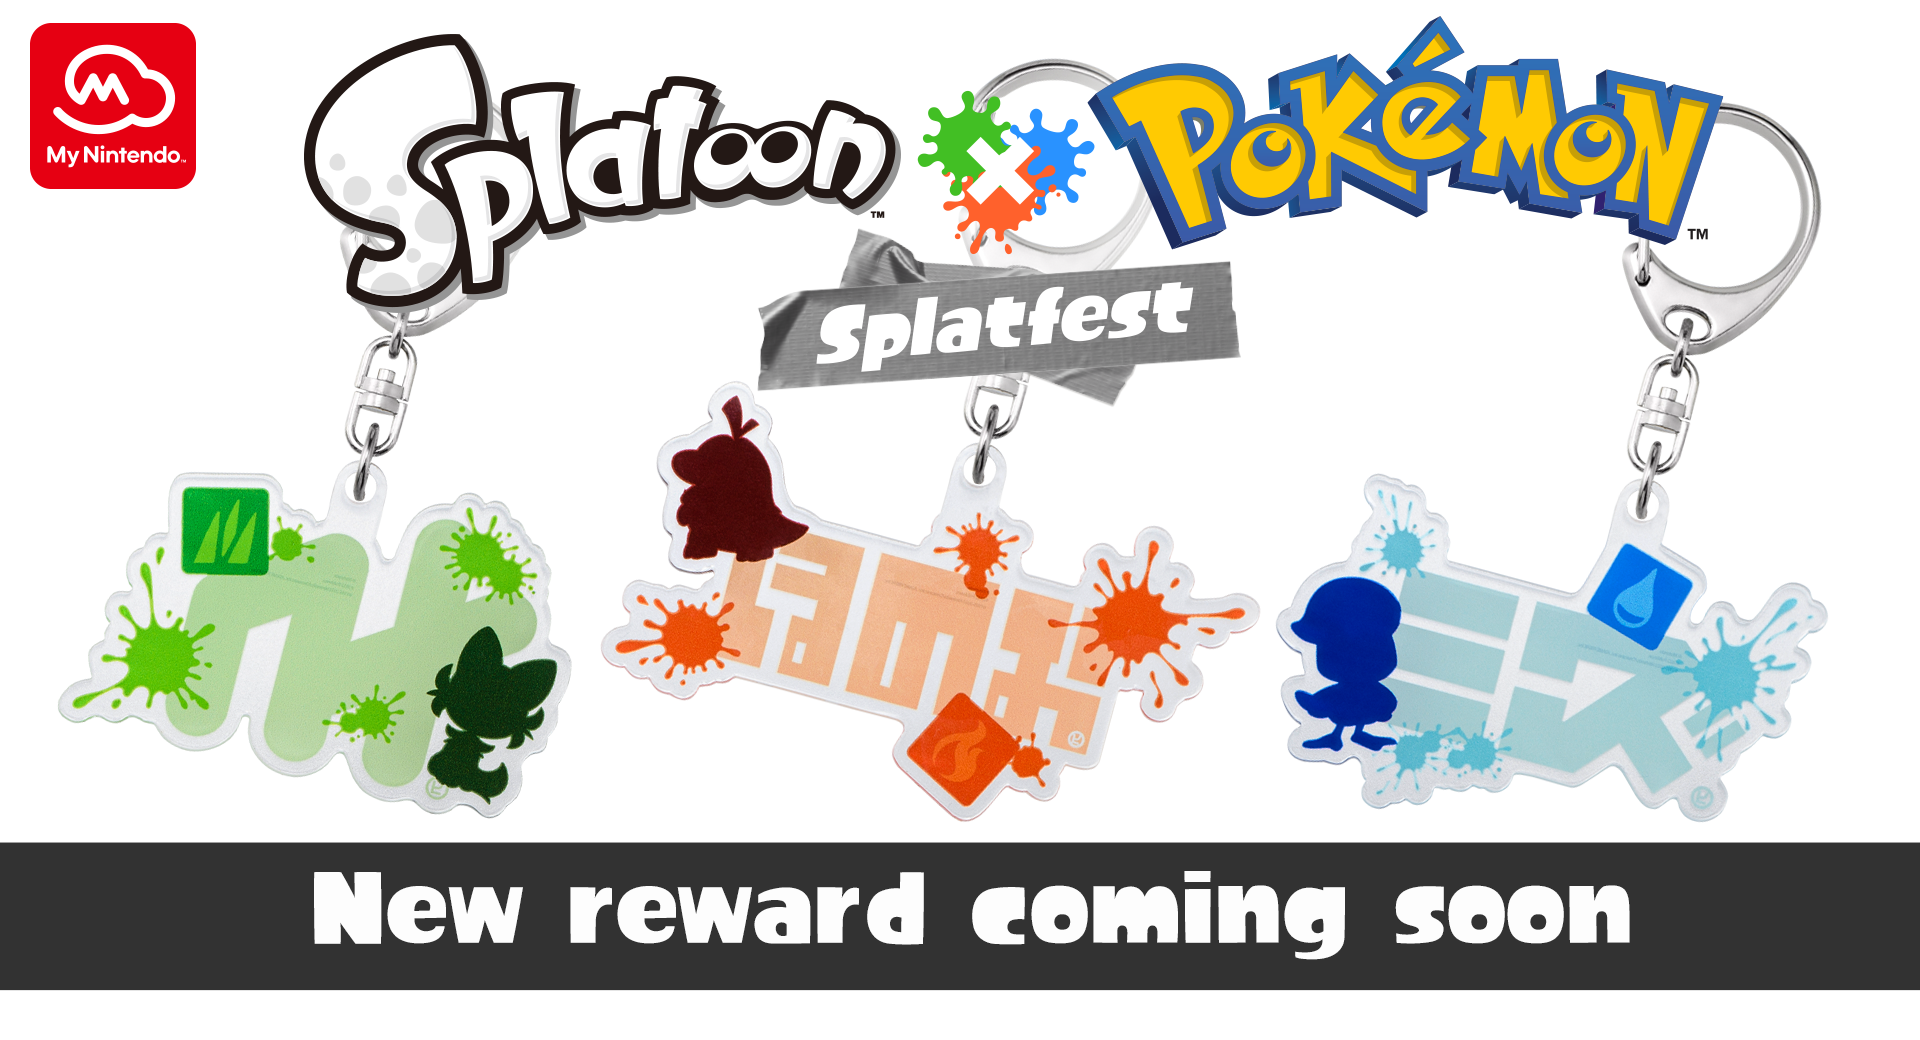 Splatoon x Pokémon Splatfest keychain rewards